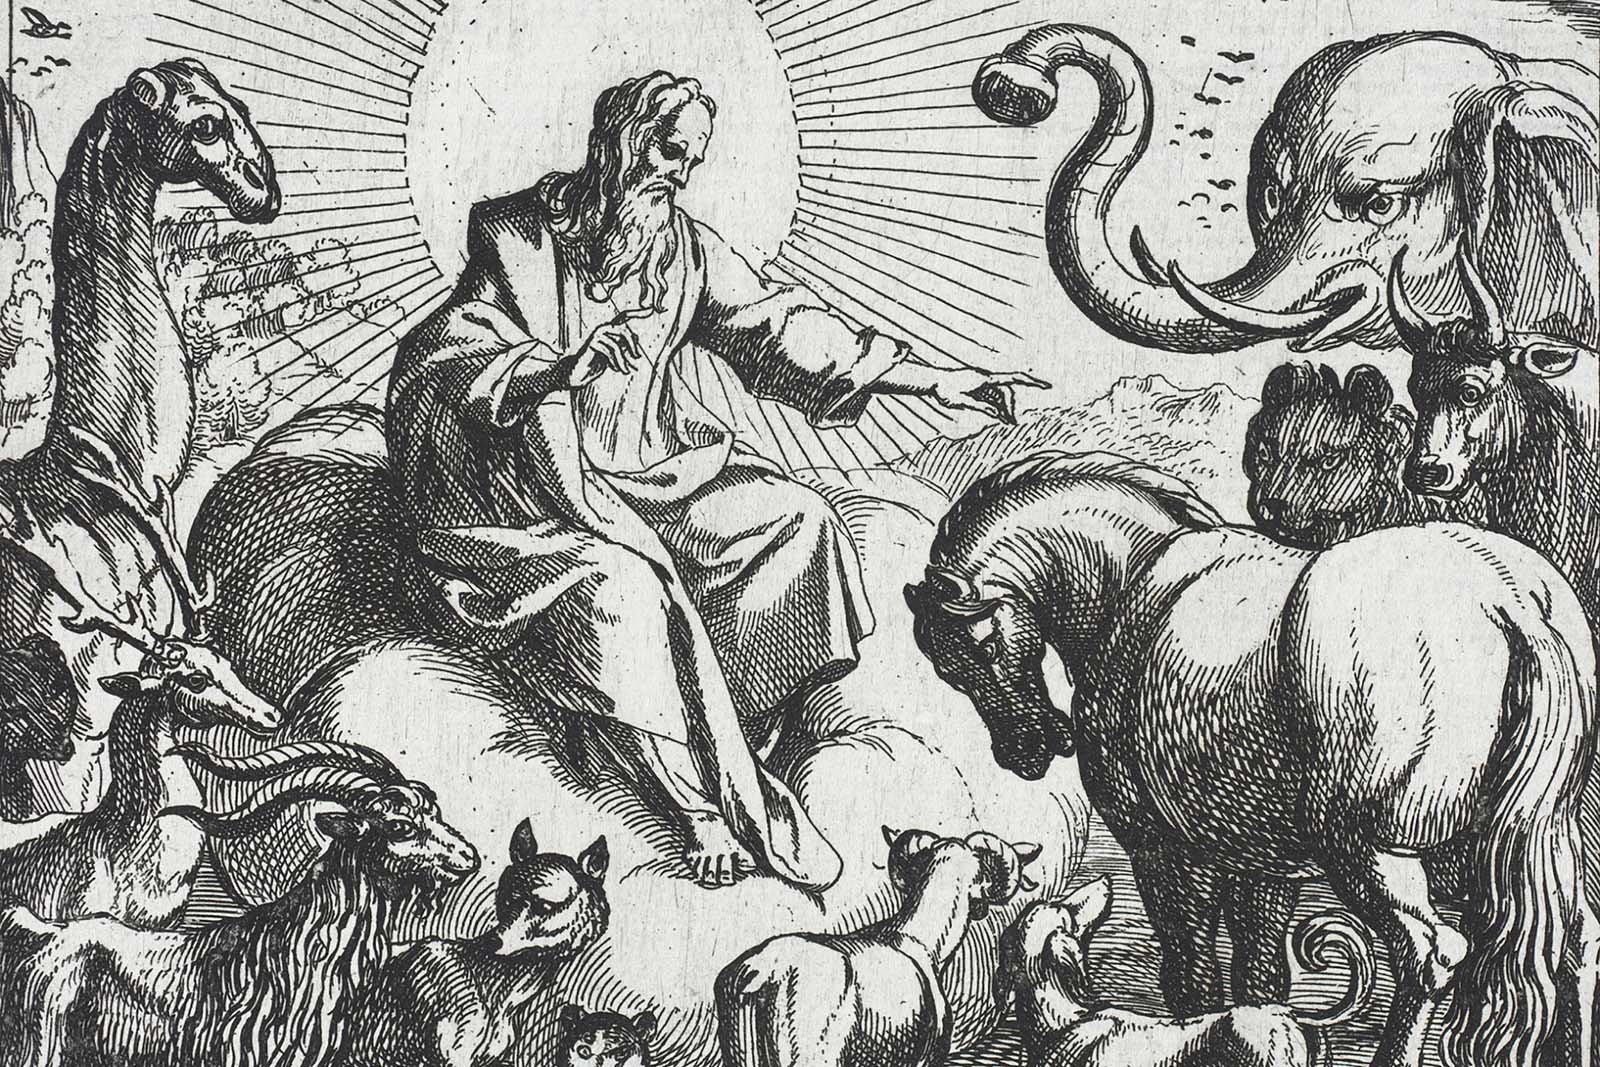 Das Tier als Mitgeschöpf – die Position der evangelischen Kirche